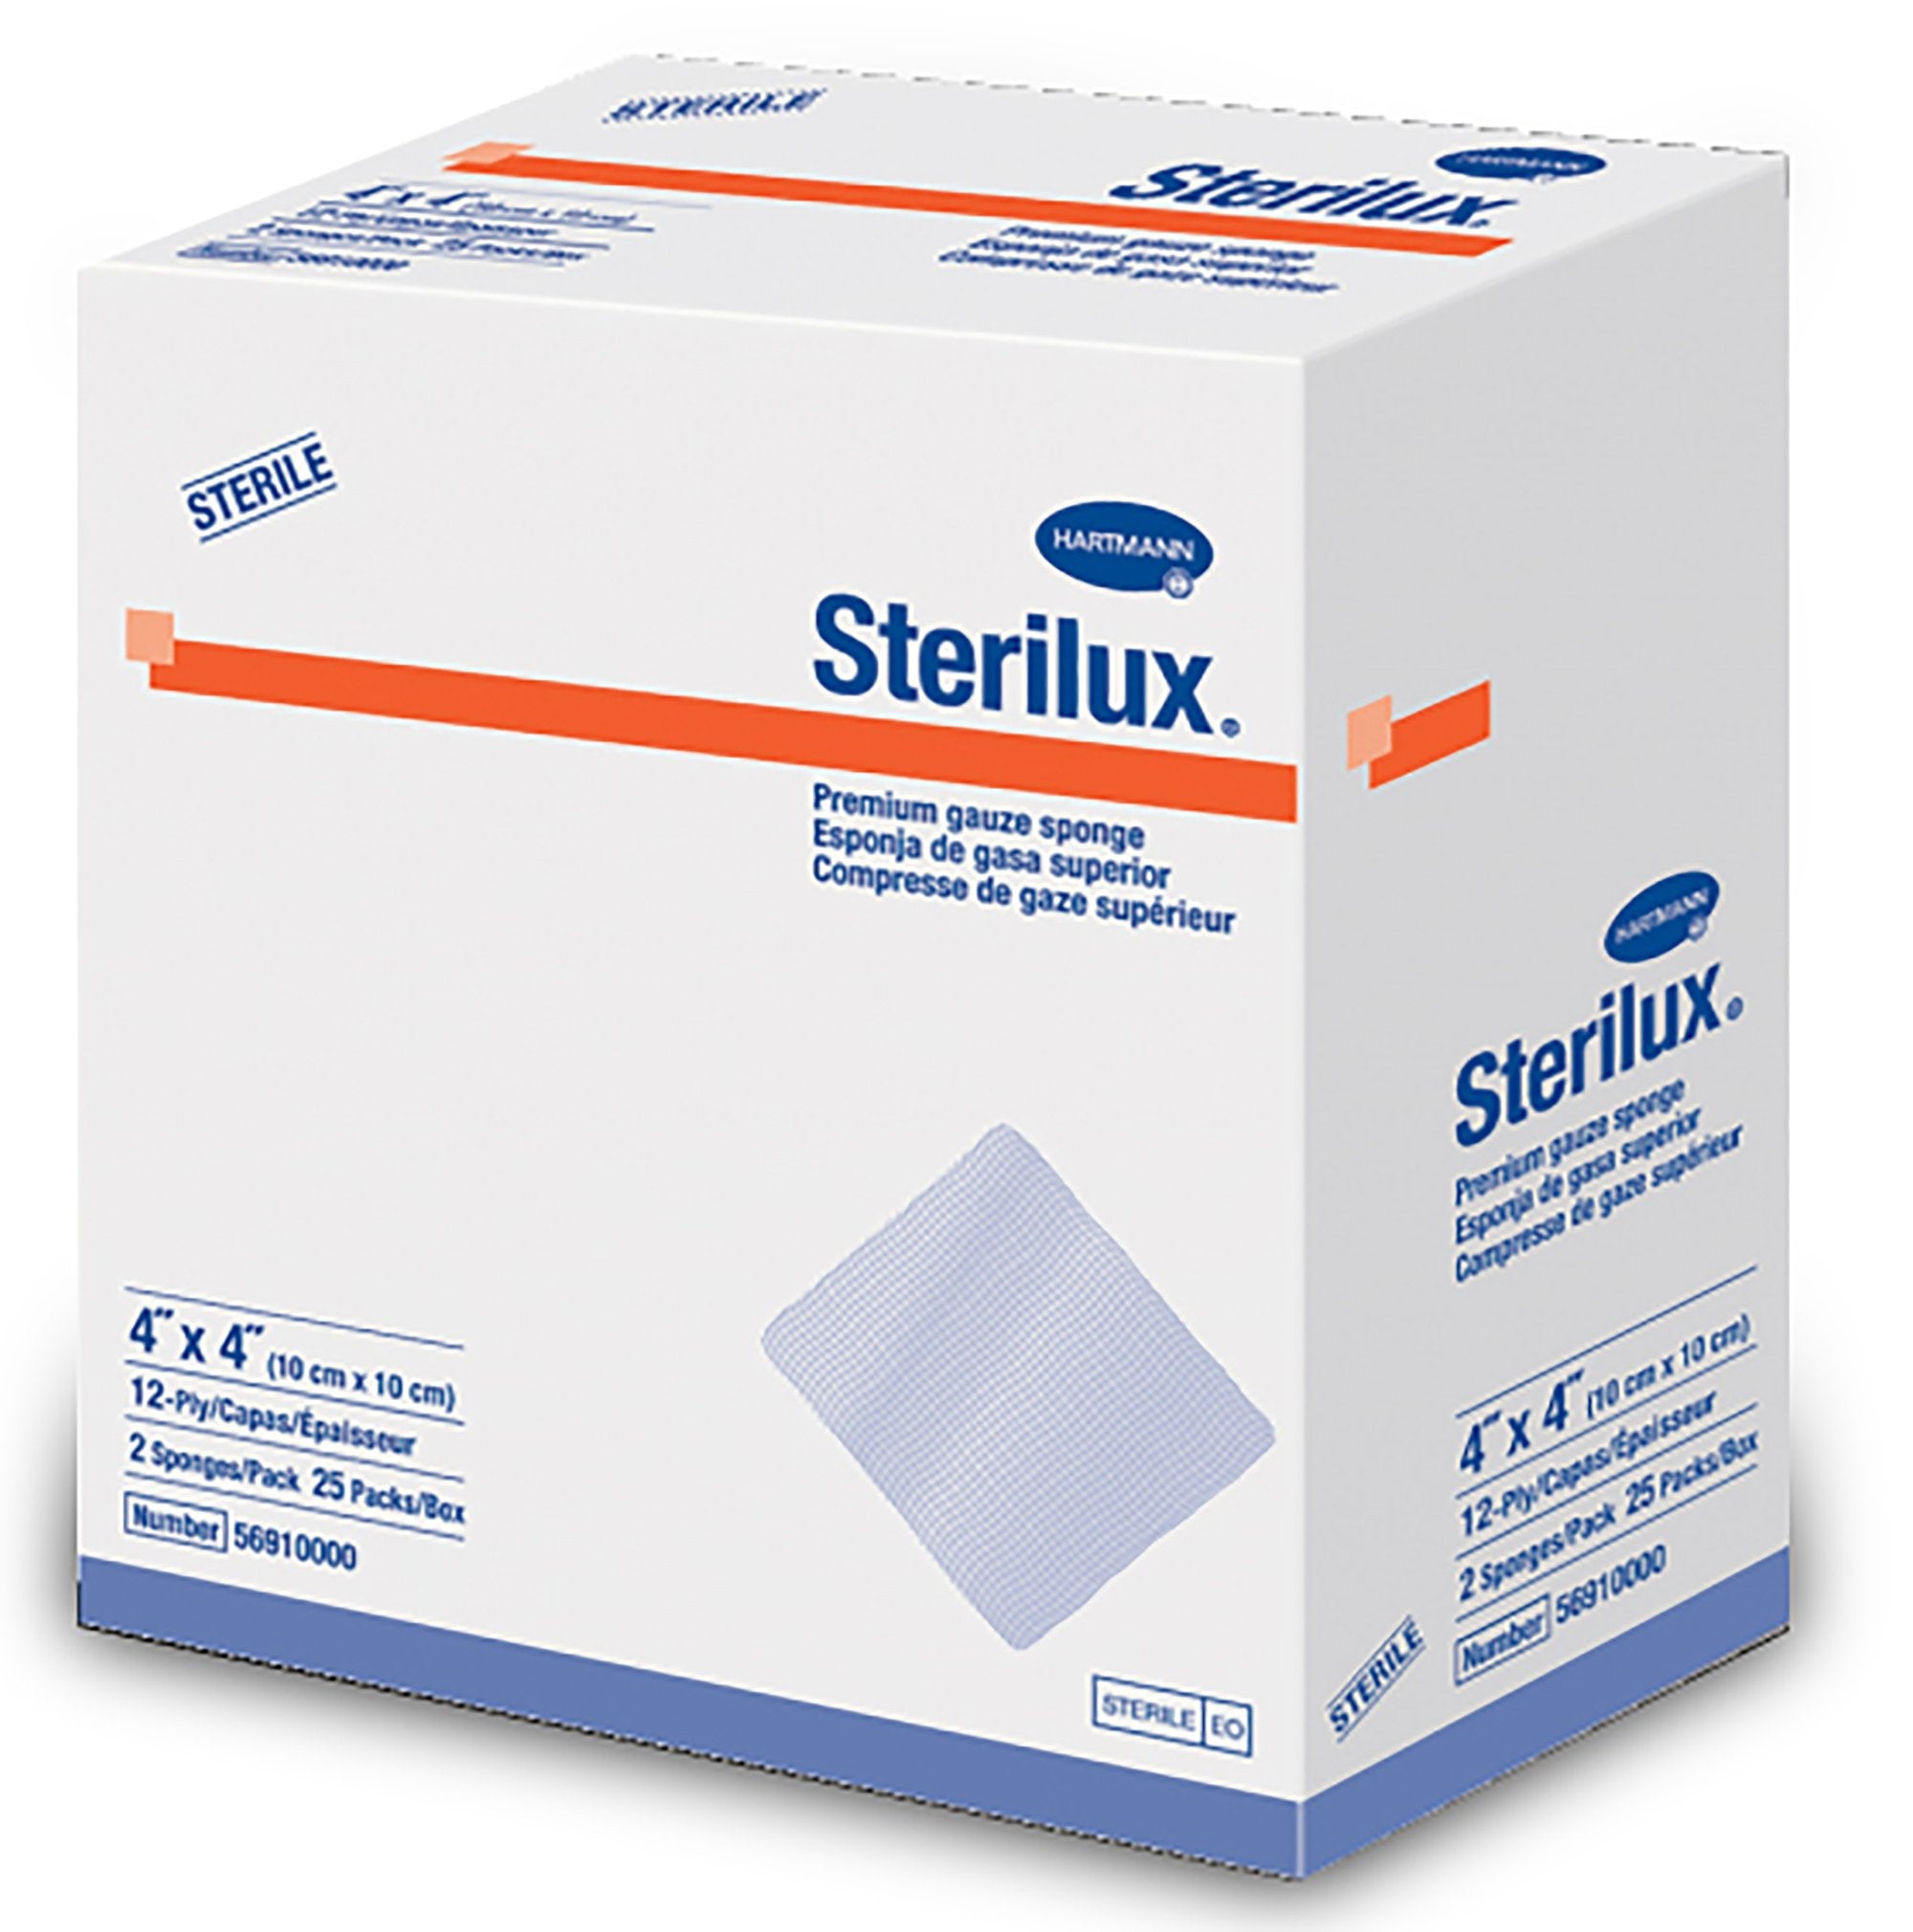 Gauze Sponge Sterilux® 4 X 4 Inch 2 per Pack Sterile 12-Ply Square